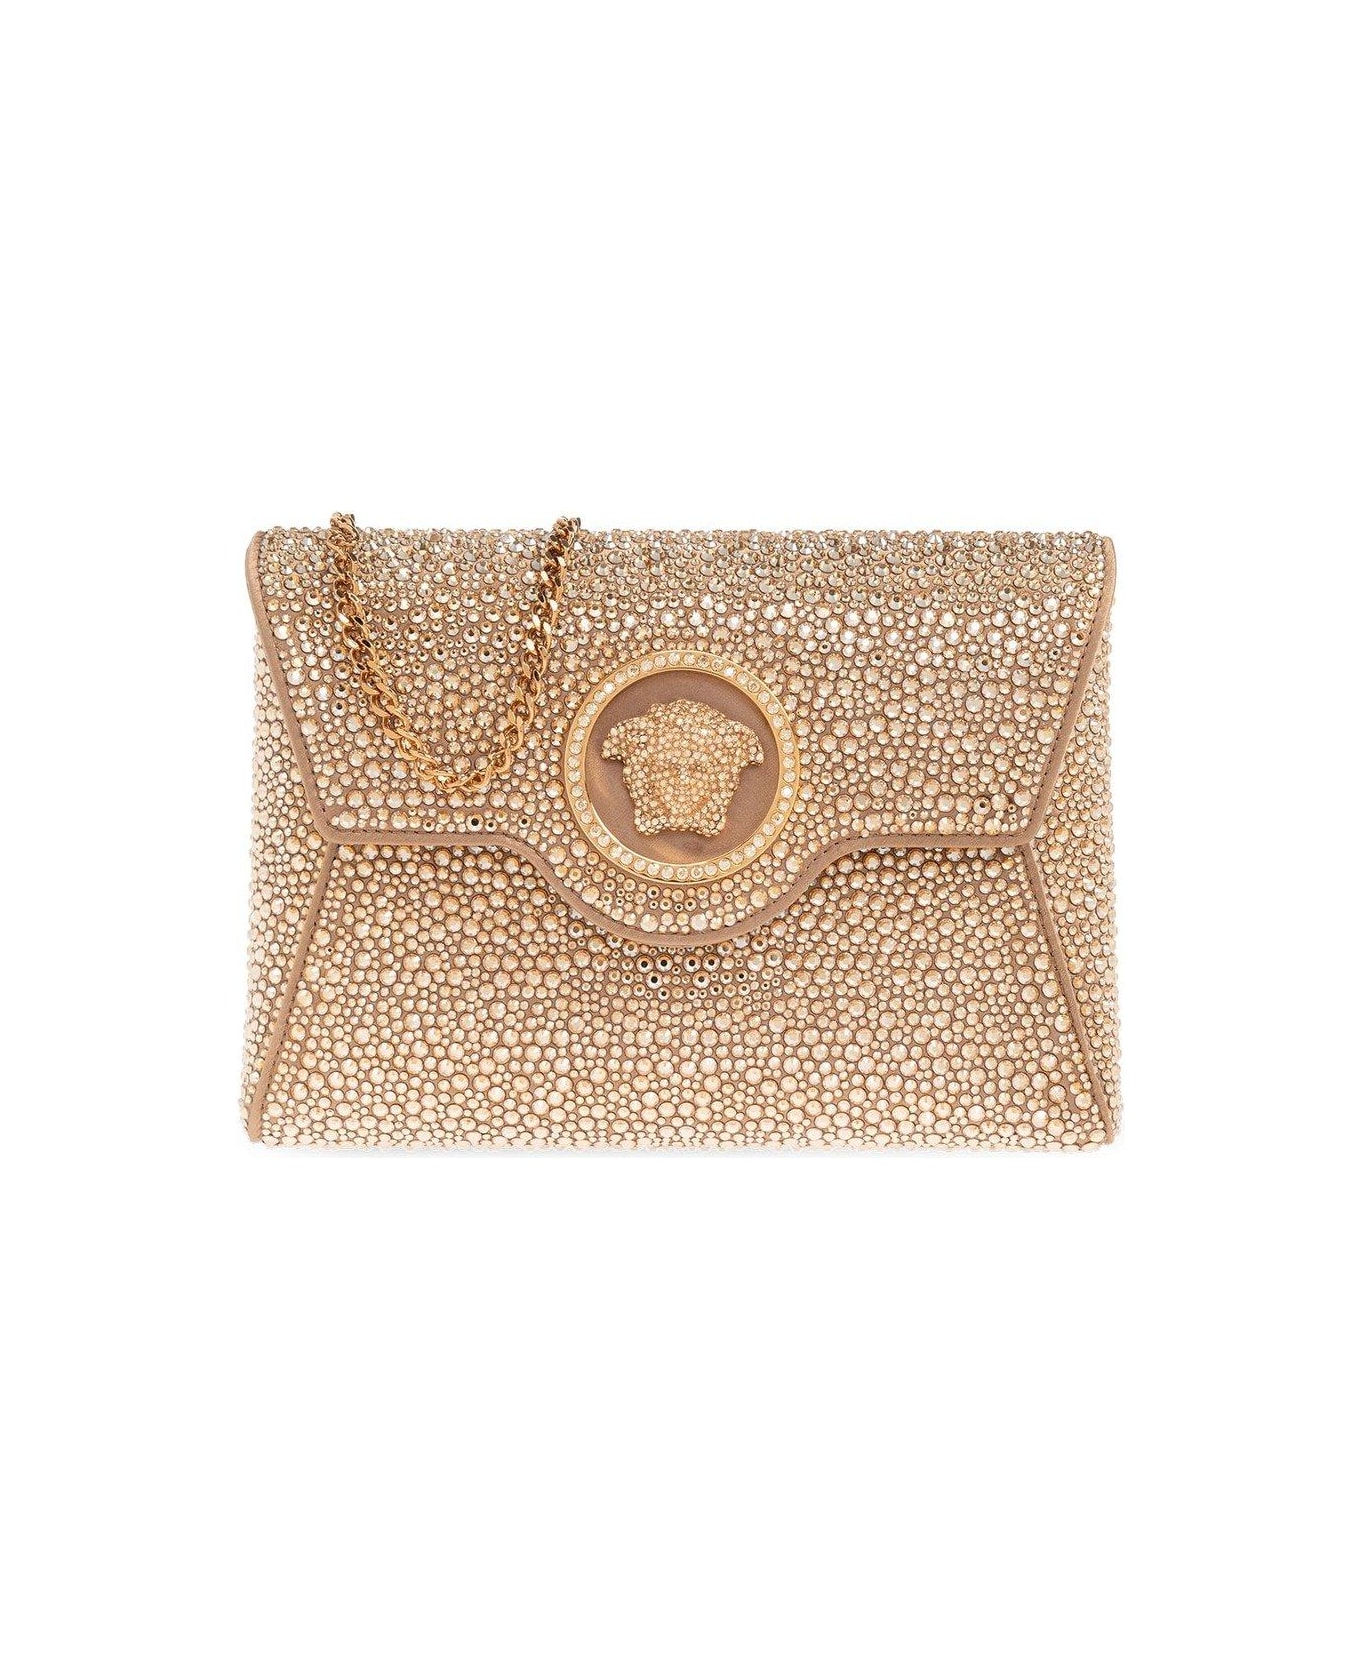 Versace Medusa Plaque Embellished Clutch Bag - NEUTRALS/GOLD